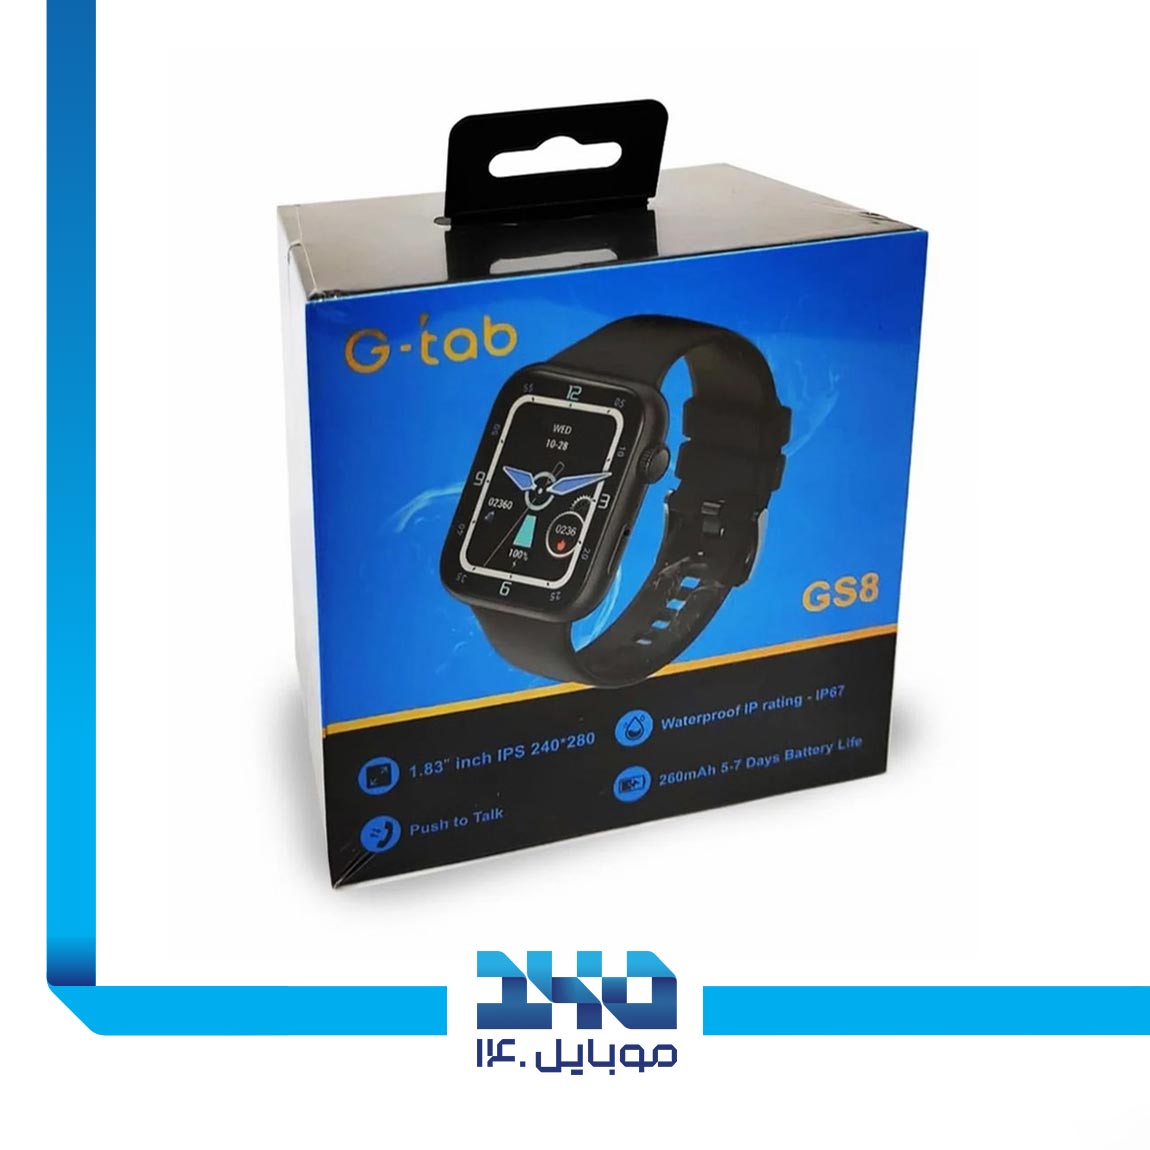 G-Tab GS8 Smart Watch 3